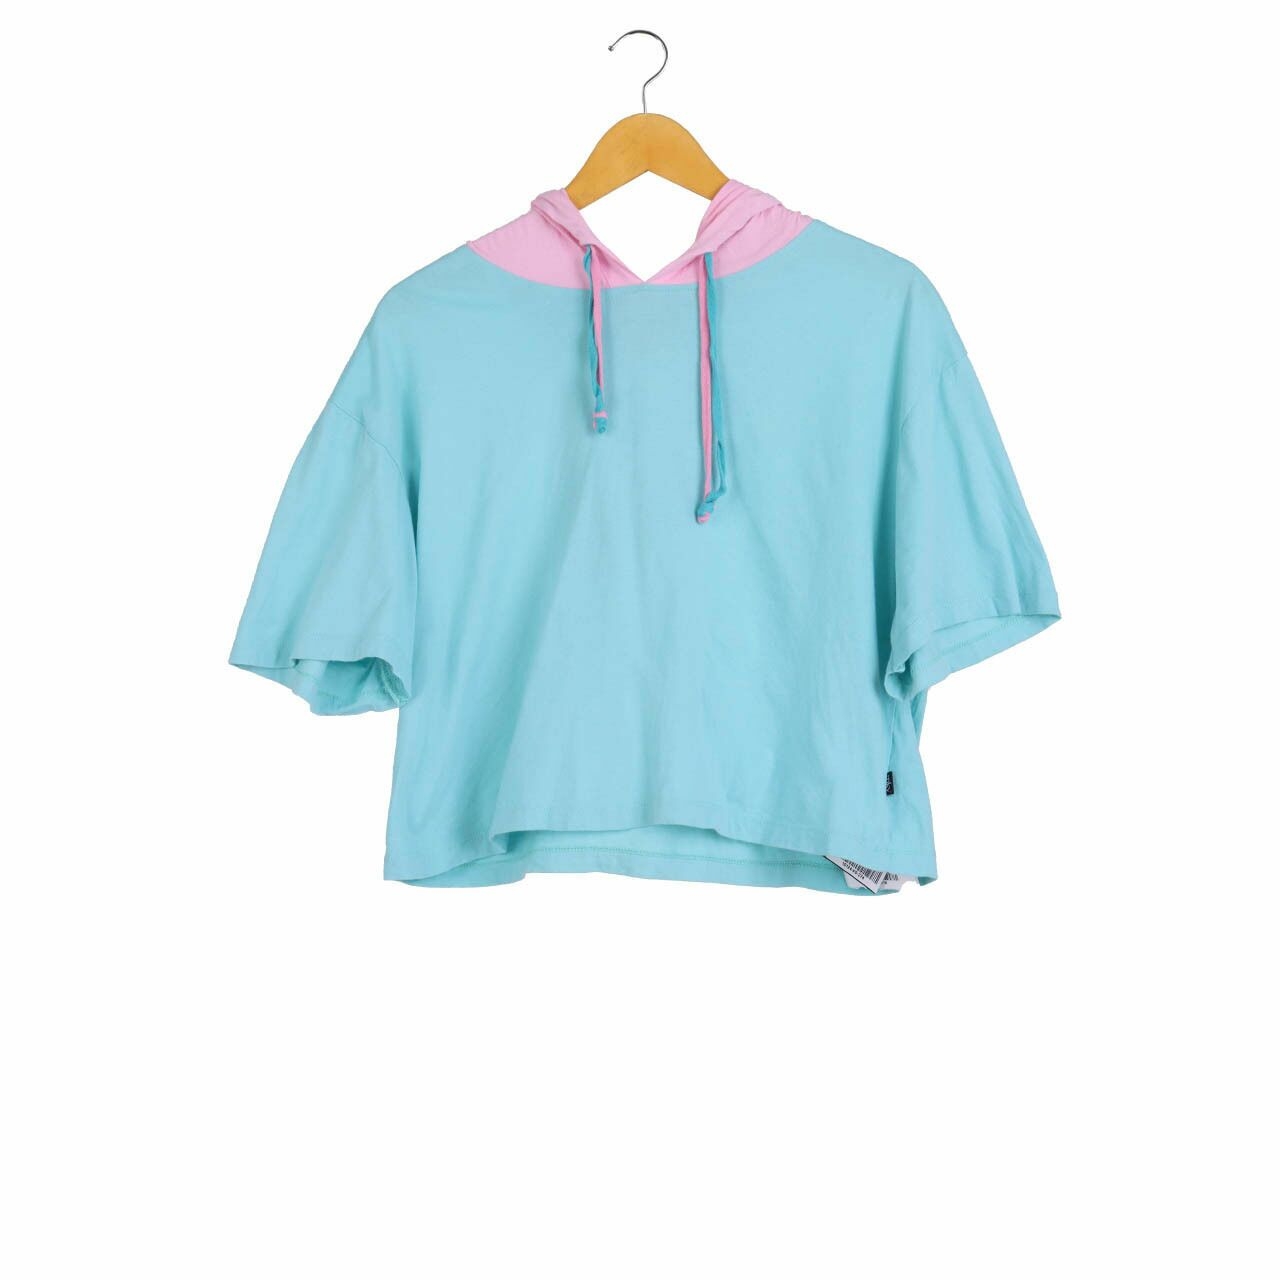 mky Pink & Light Blue T-Shirt Hoodie